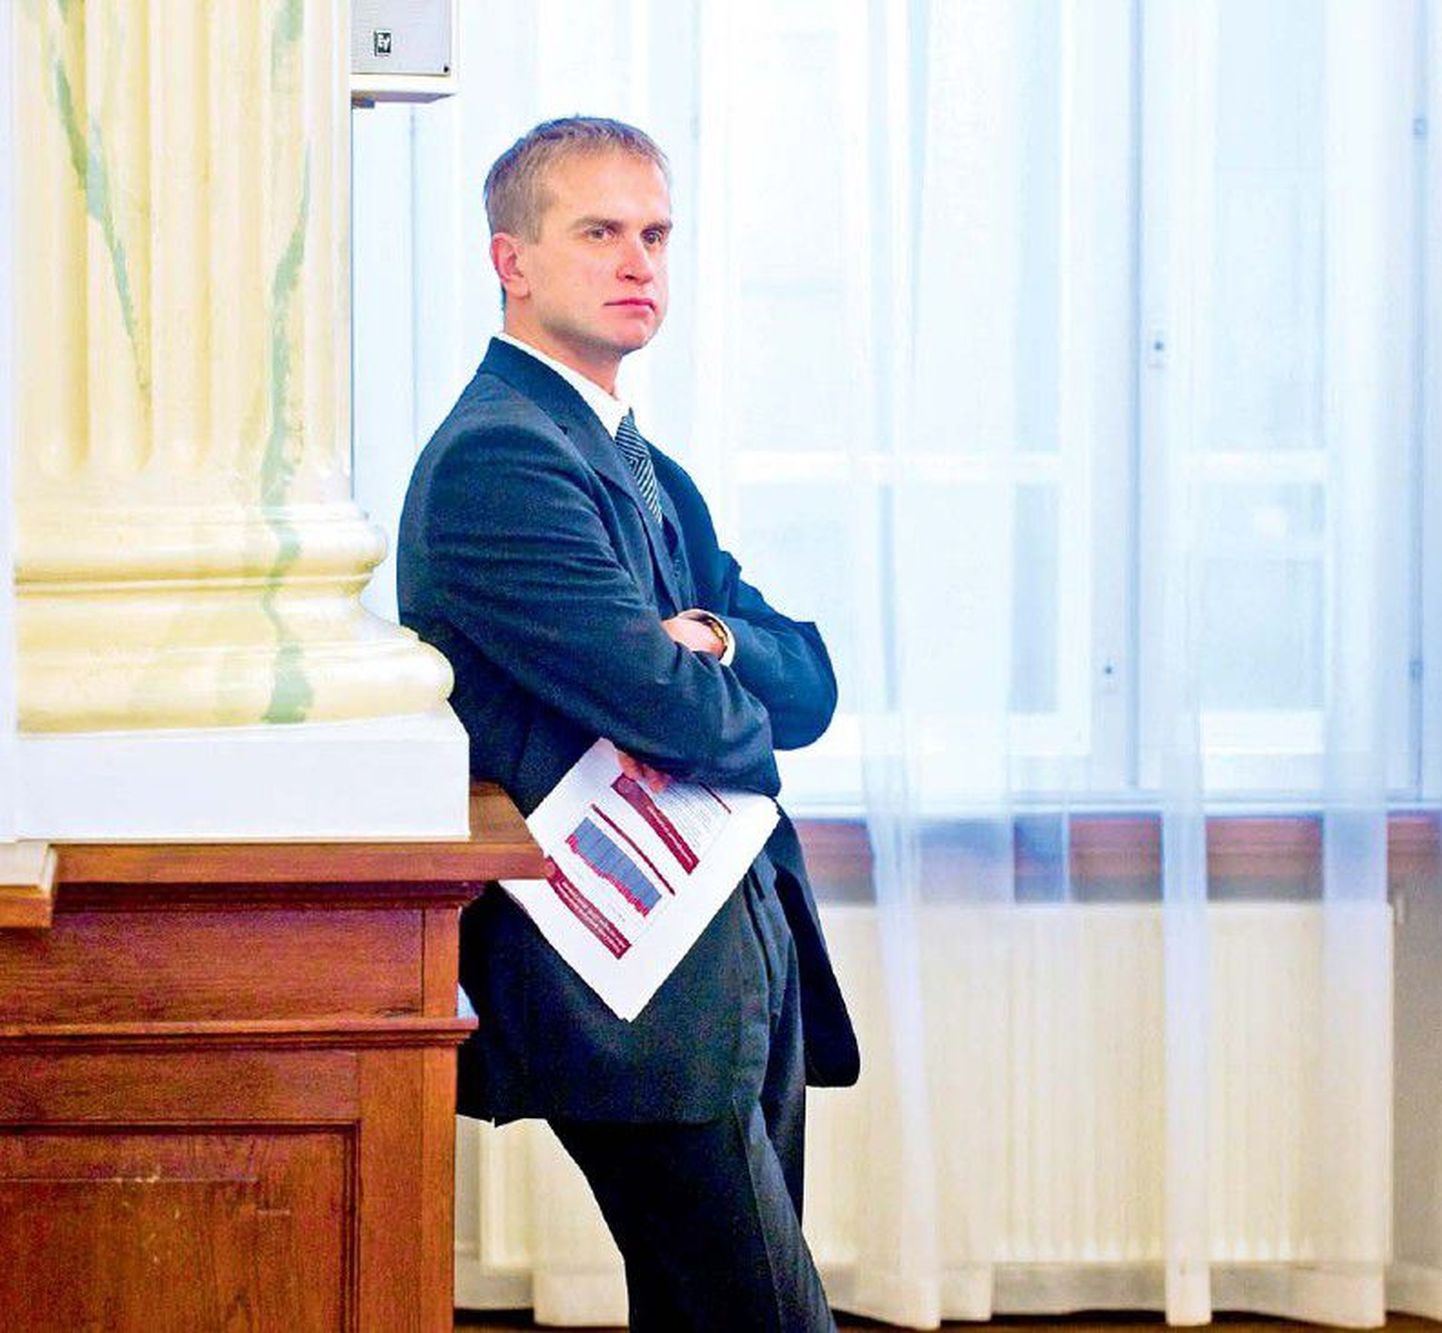 Enam kui 10 aastat Eesti Panga asepresident olnud Märten Ross pidi ameti maha panema panga nõukogu eelmise esimehe Jaan Männiku survel.